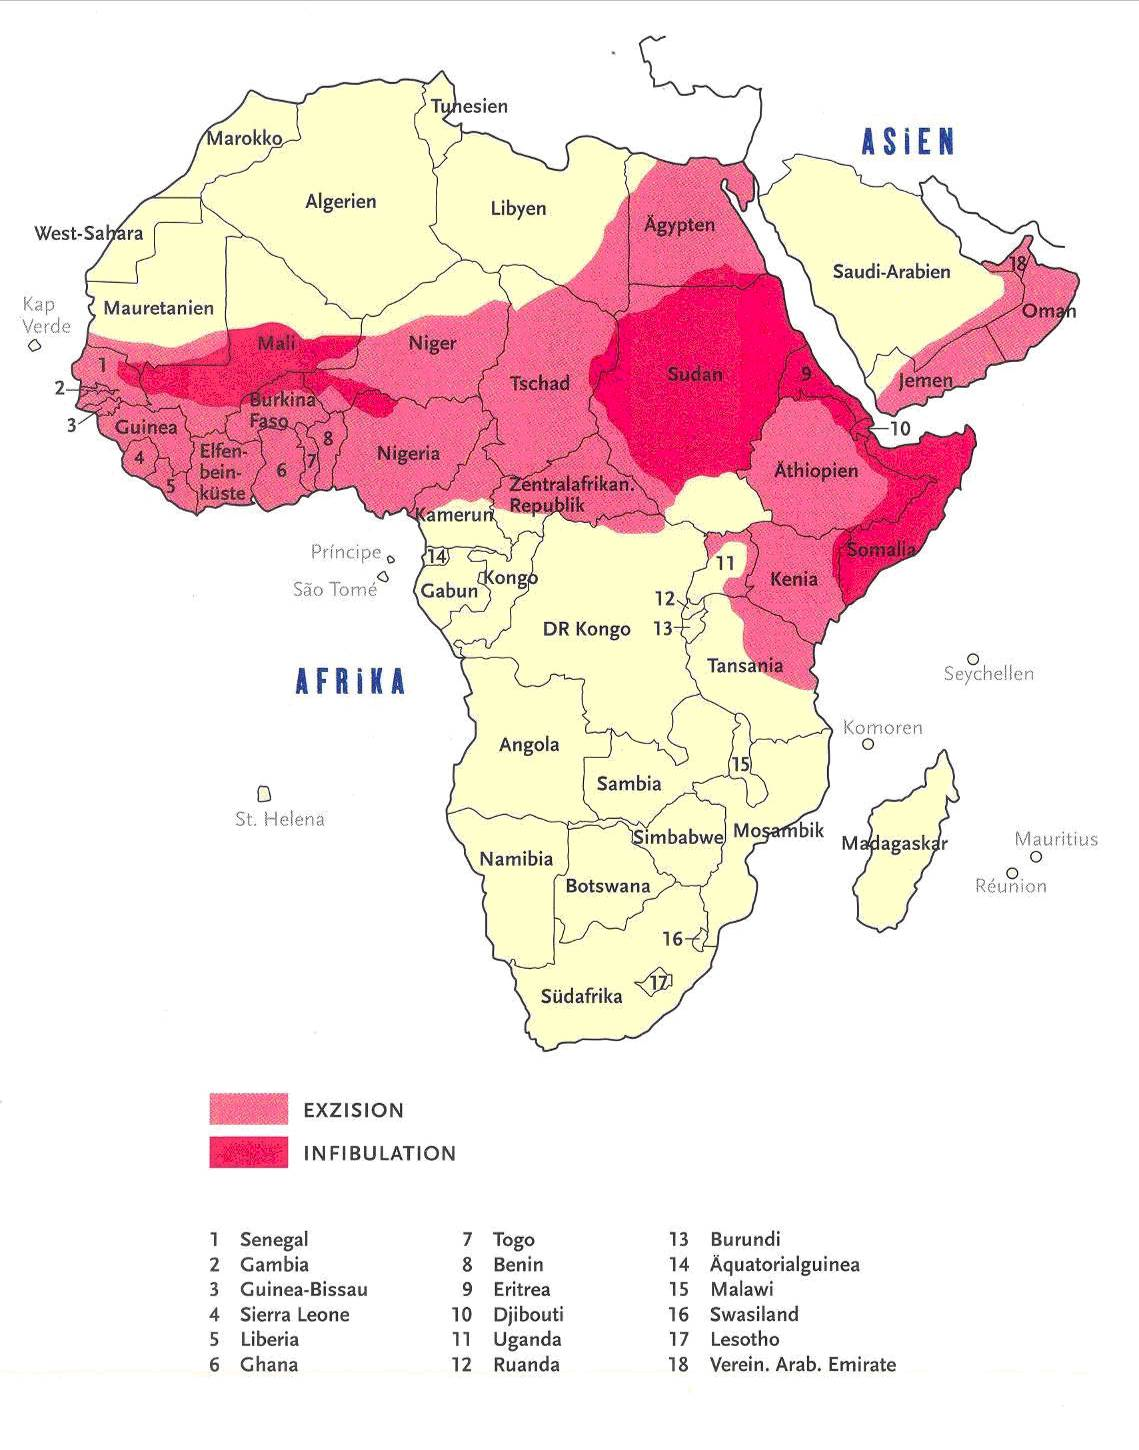 Weibliche Genitalverstümmelung ist wie in der Karte zu sehen ist - in 28 afrikanischen Ländern v.a. südlich der Sahara verbreitet.